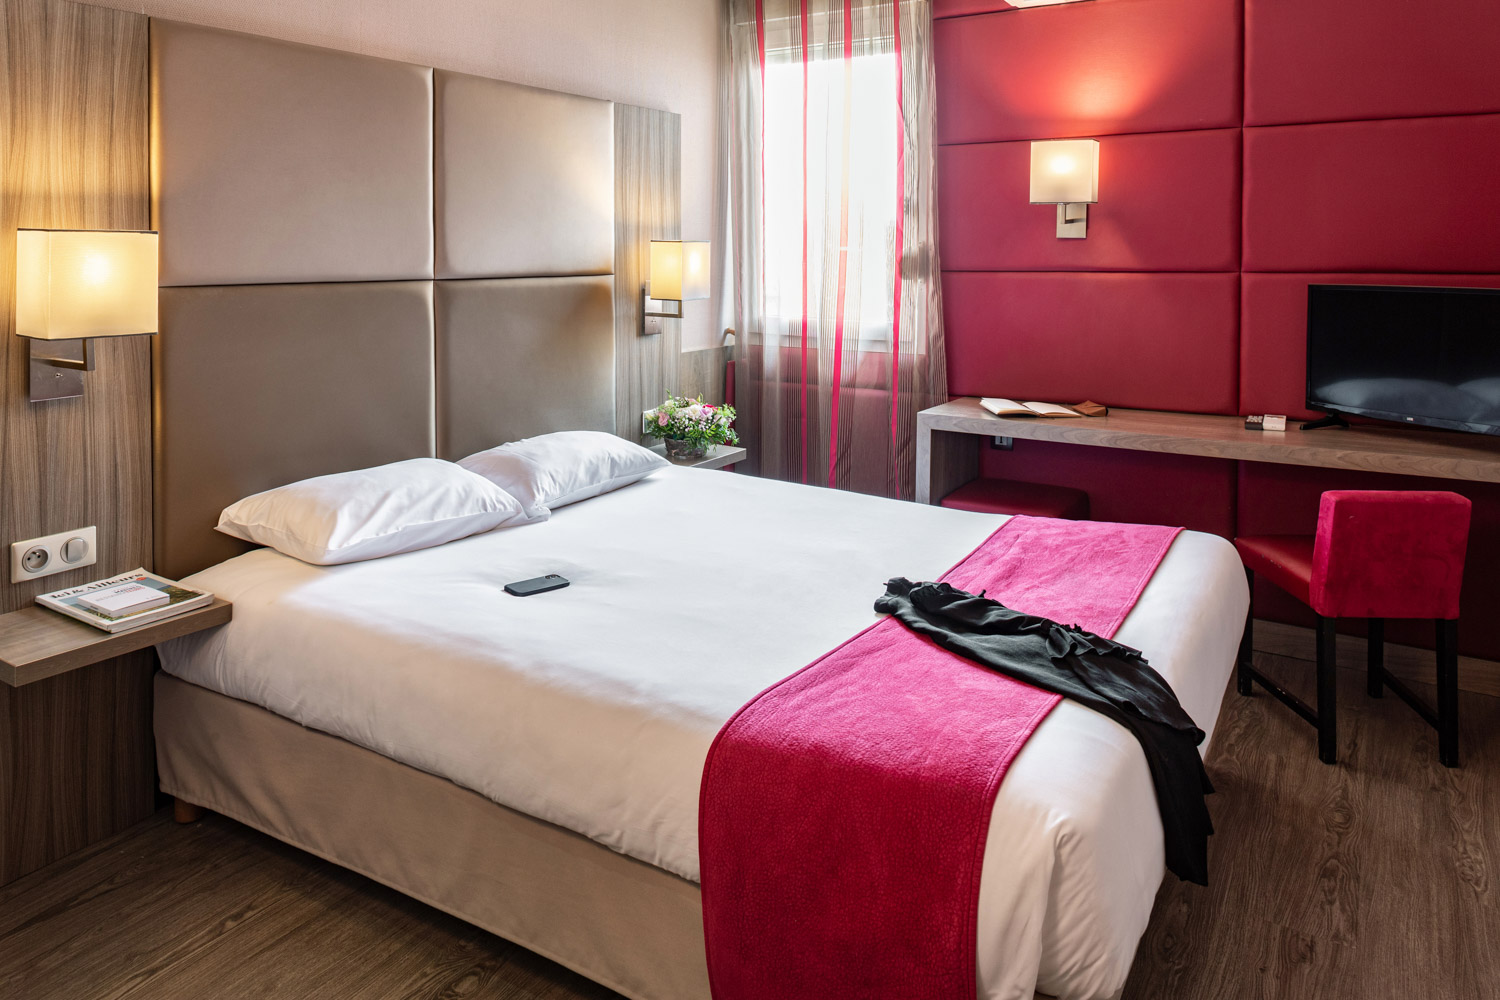 Photographie d'un grand lit dans une chambre d'hôtel pour mettre en avant sur les site de réservation en ligne et le site internet de l'hôtel.